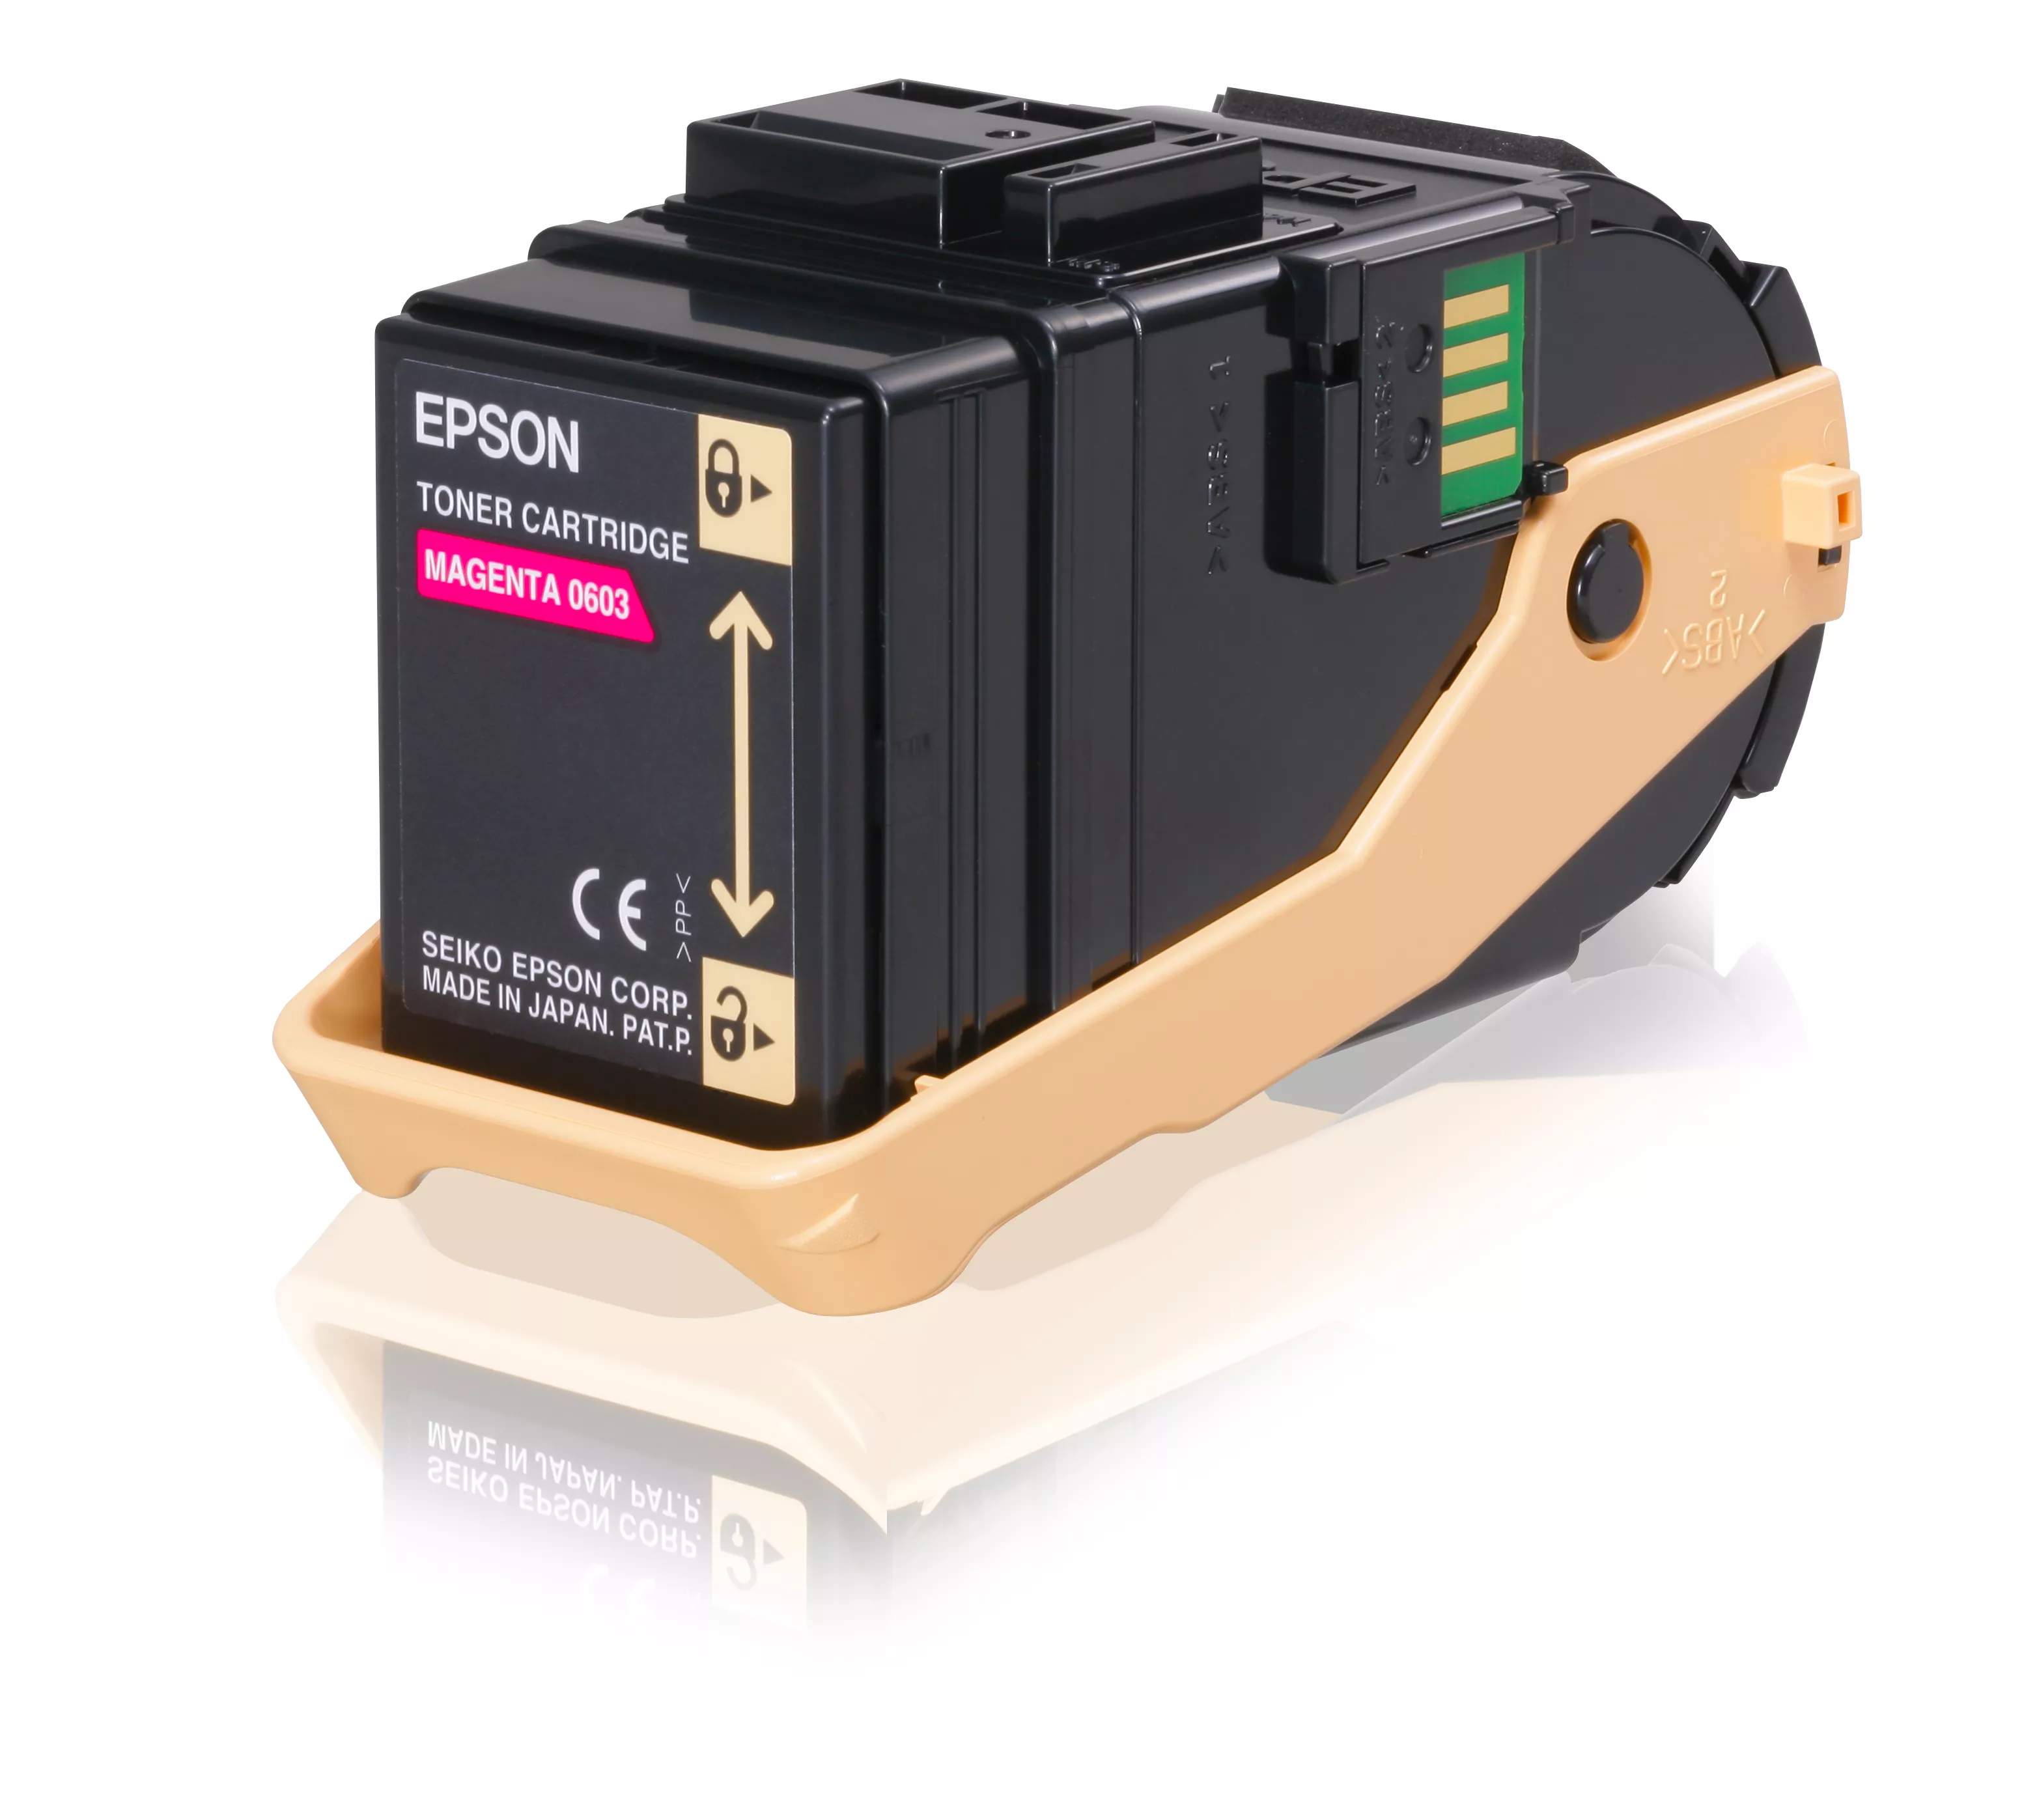 Achat EPSON AL-C9300N cartouche de toner magenta capacité et autres produits de la marque Epson